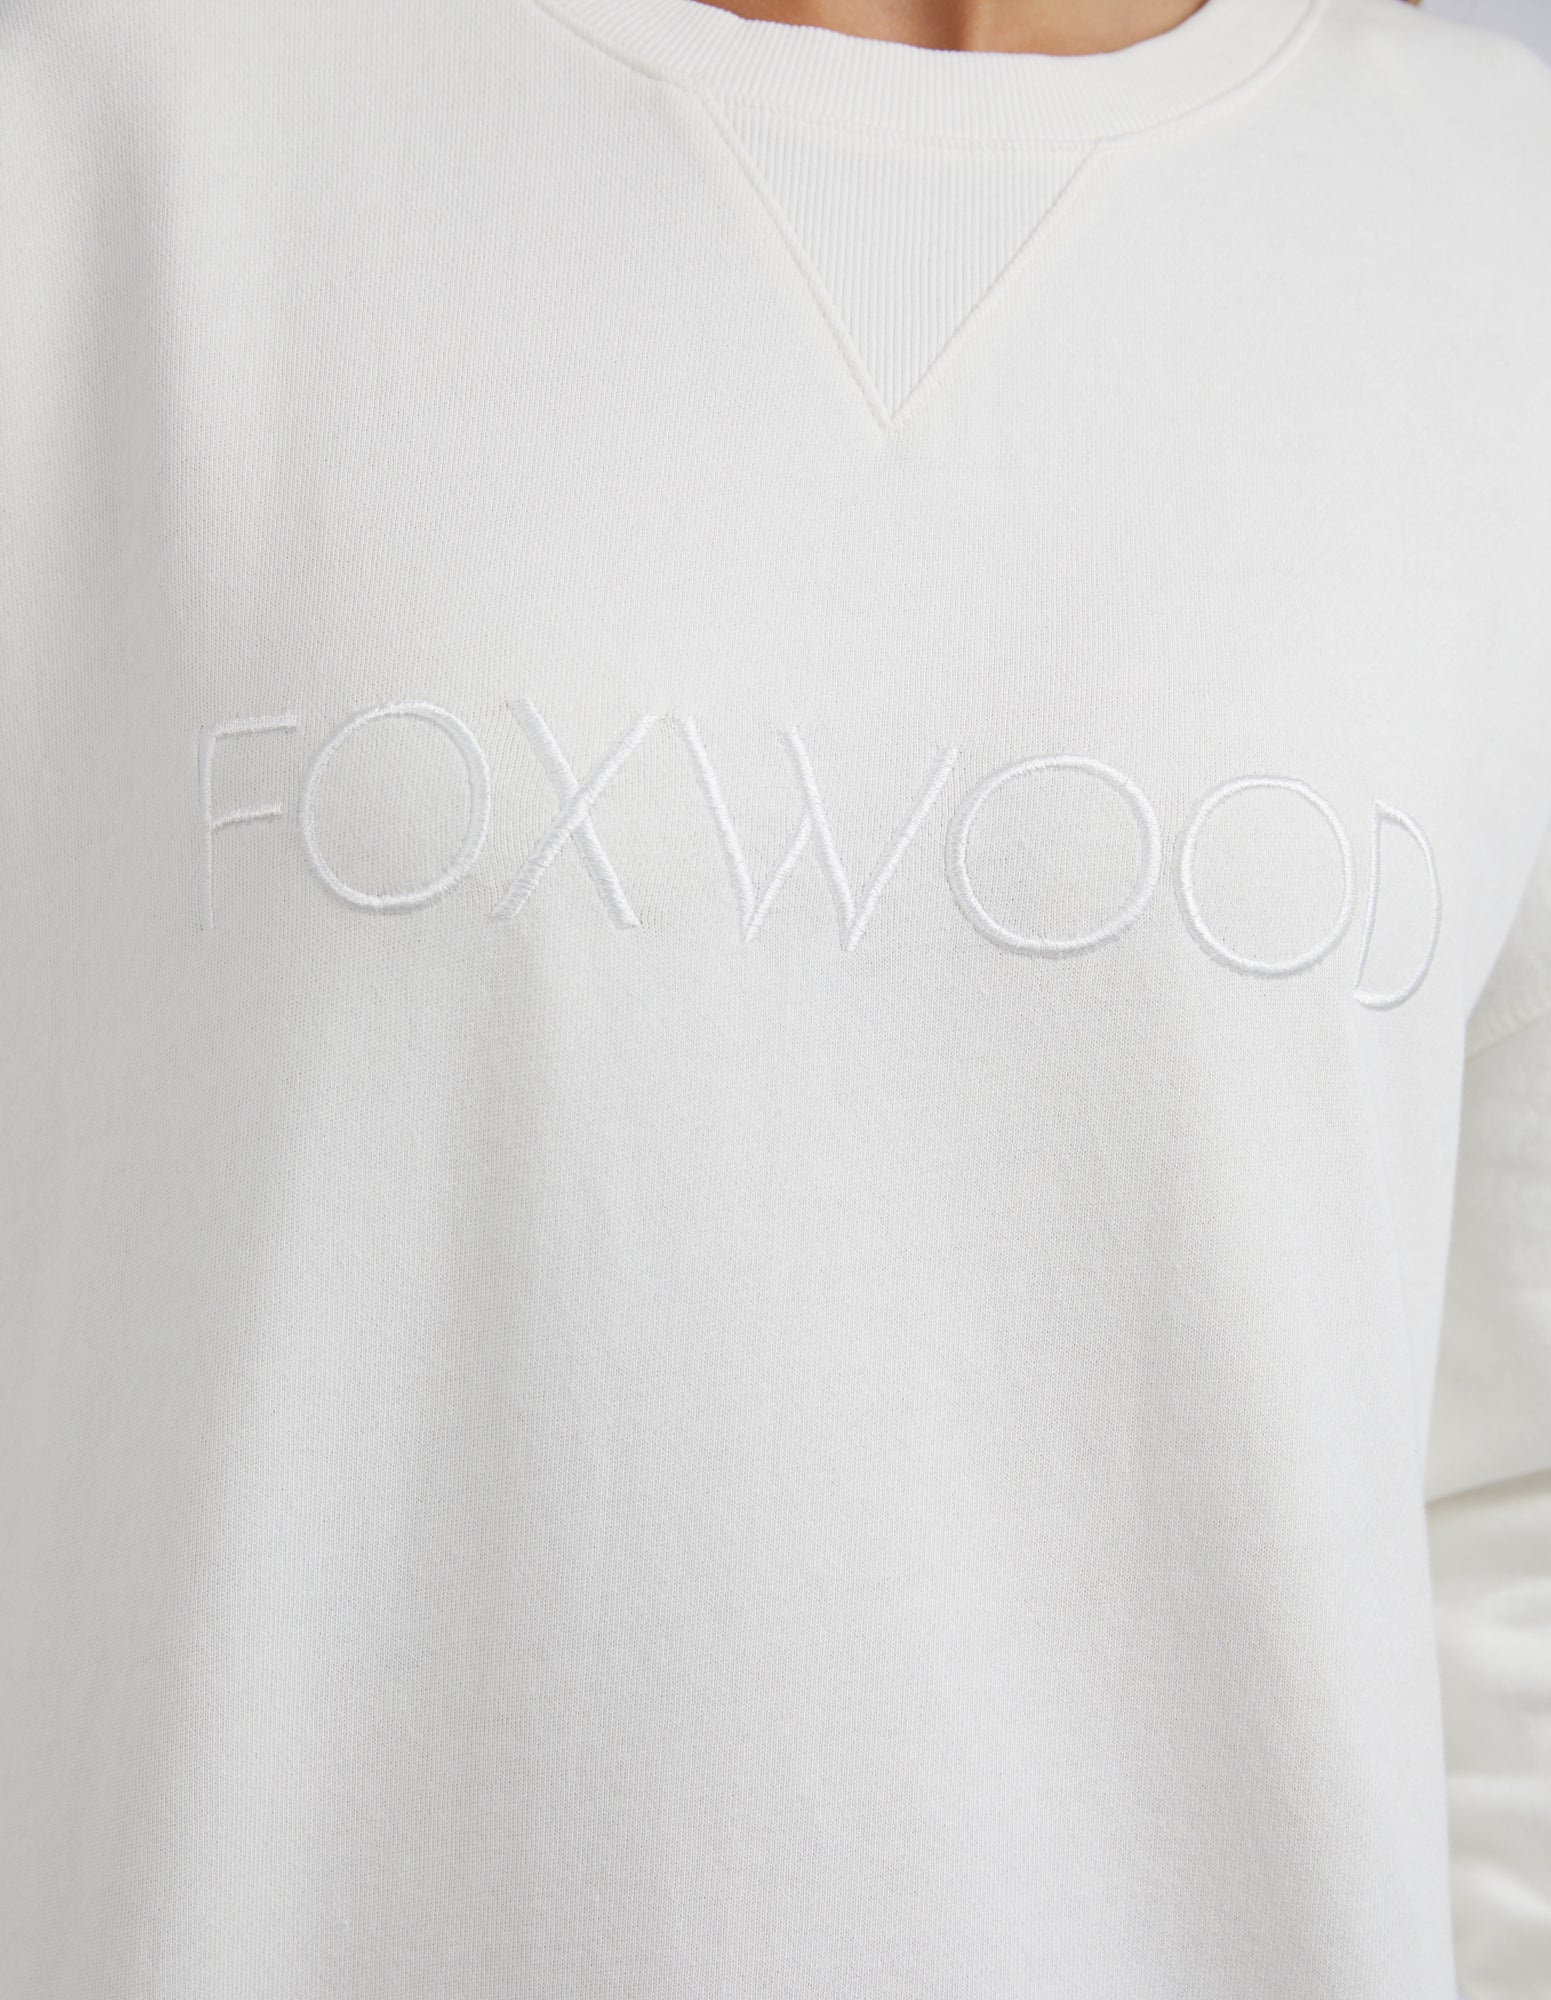 Foxwood Simplified Crew - Ecru